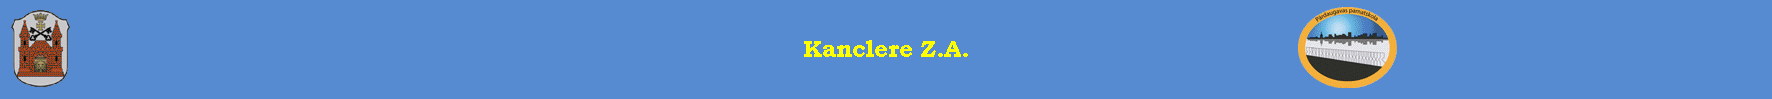 Kanclere Z.A.